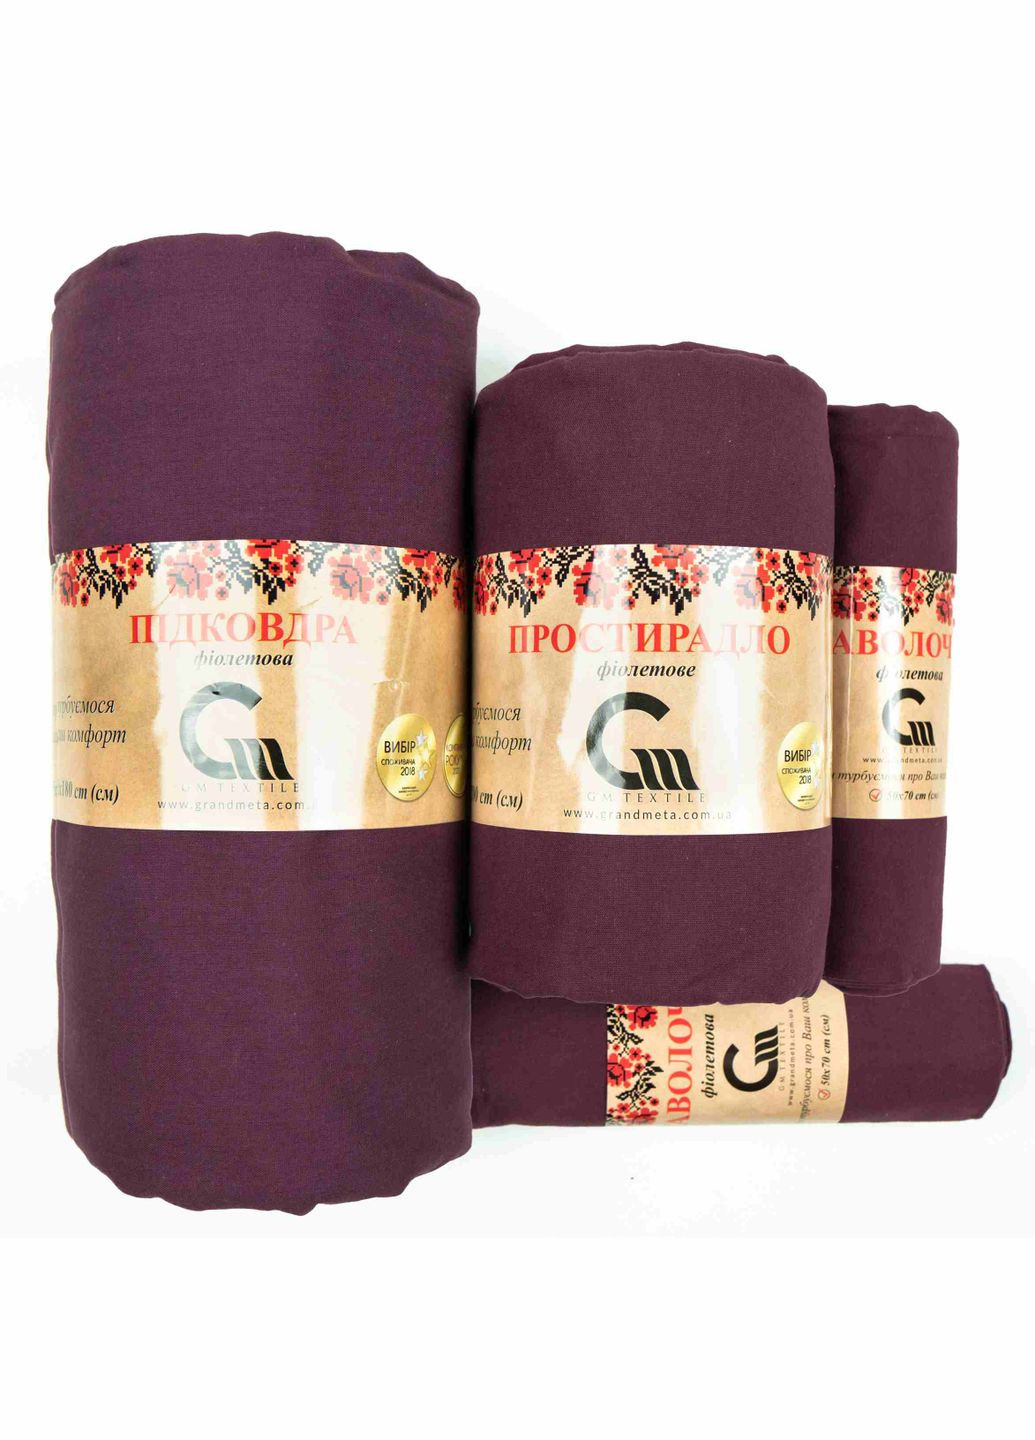 Комплект постельного белья Евро 200х220 Поплин 120 г/м2 Хлопок (Фиолетовый) 2 х 50х70 GM Textile (273378620)